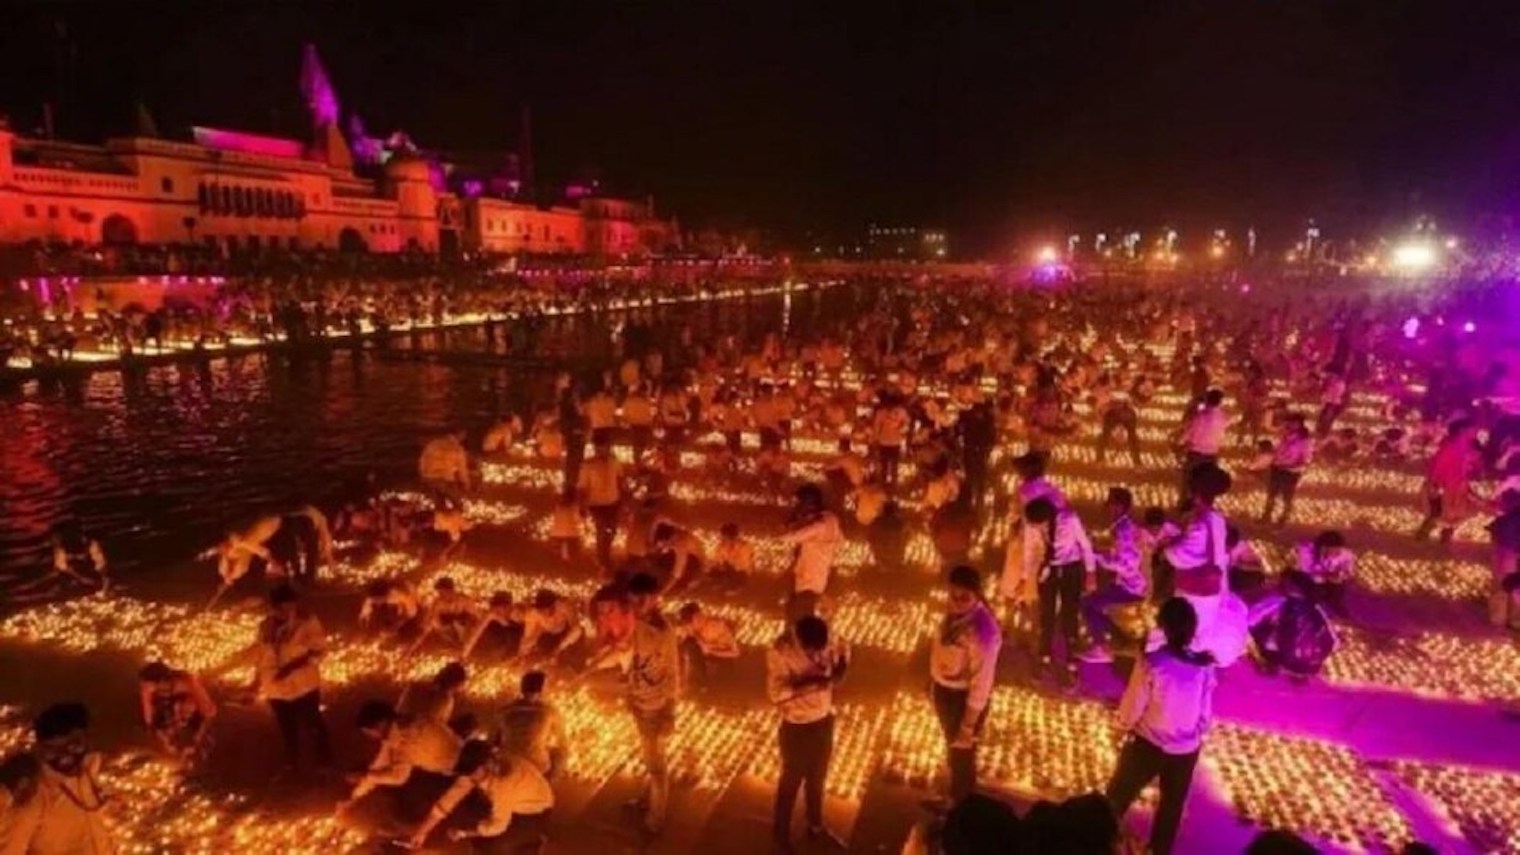 दीपोत्सव पर 21 लाख से अधिक दीयों से रोशन होगी प्रभु श्रीराम की नगरी